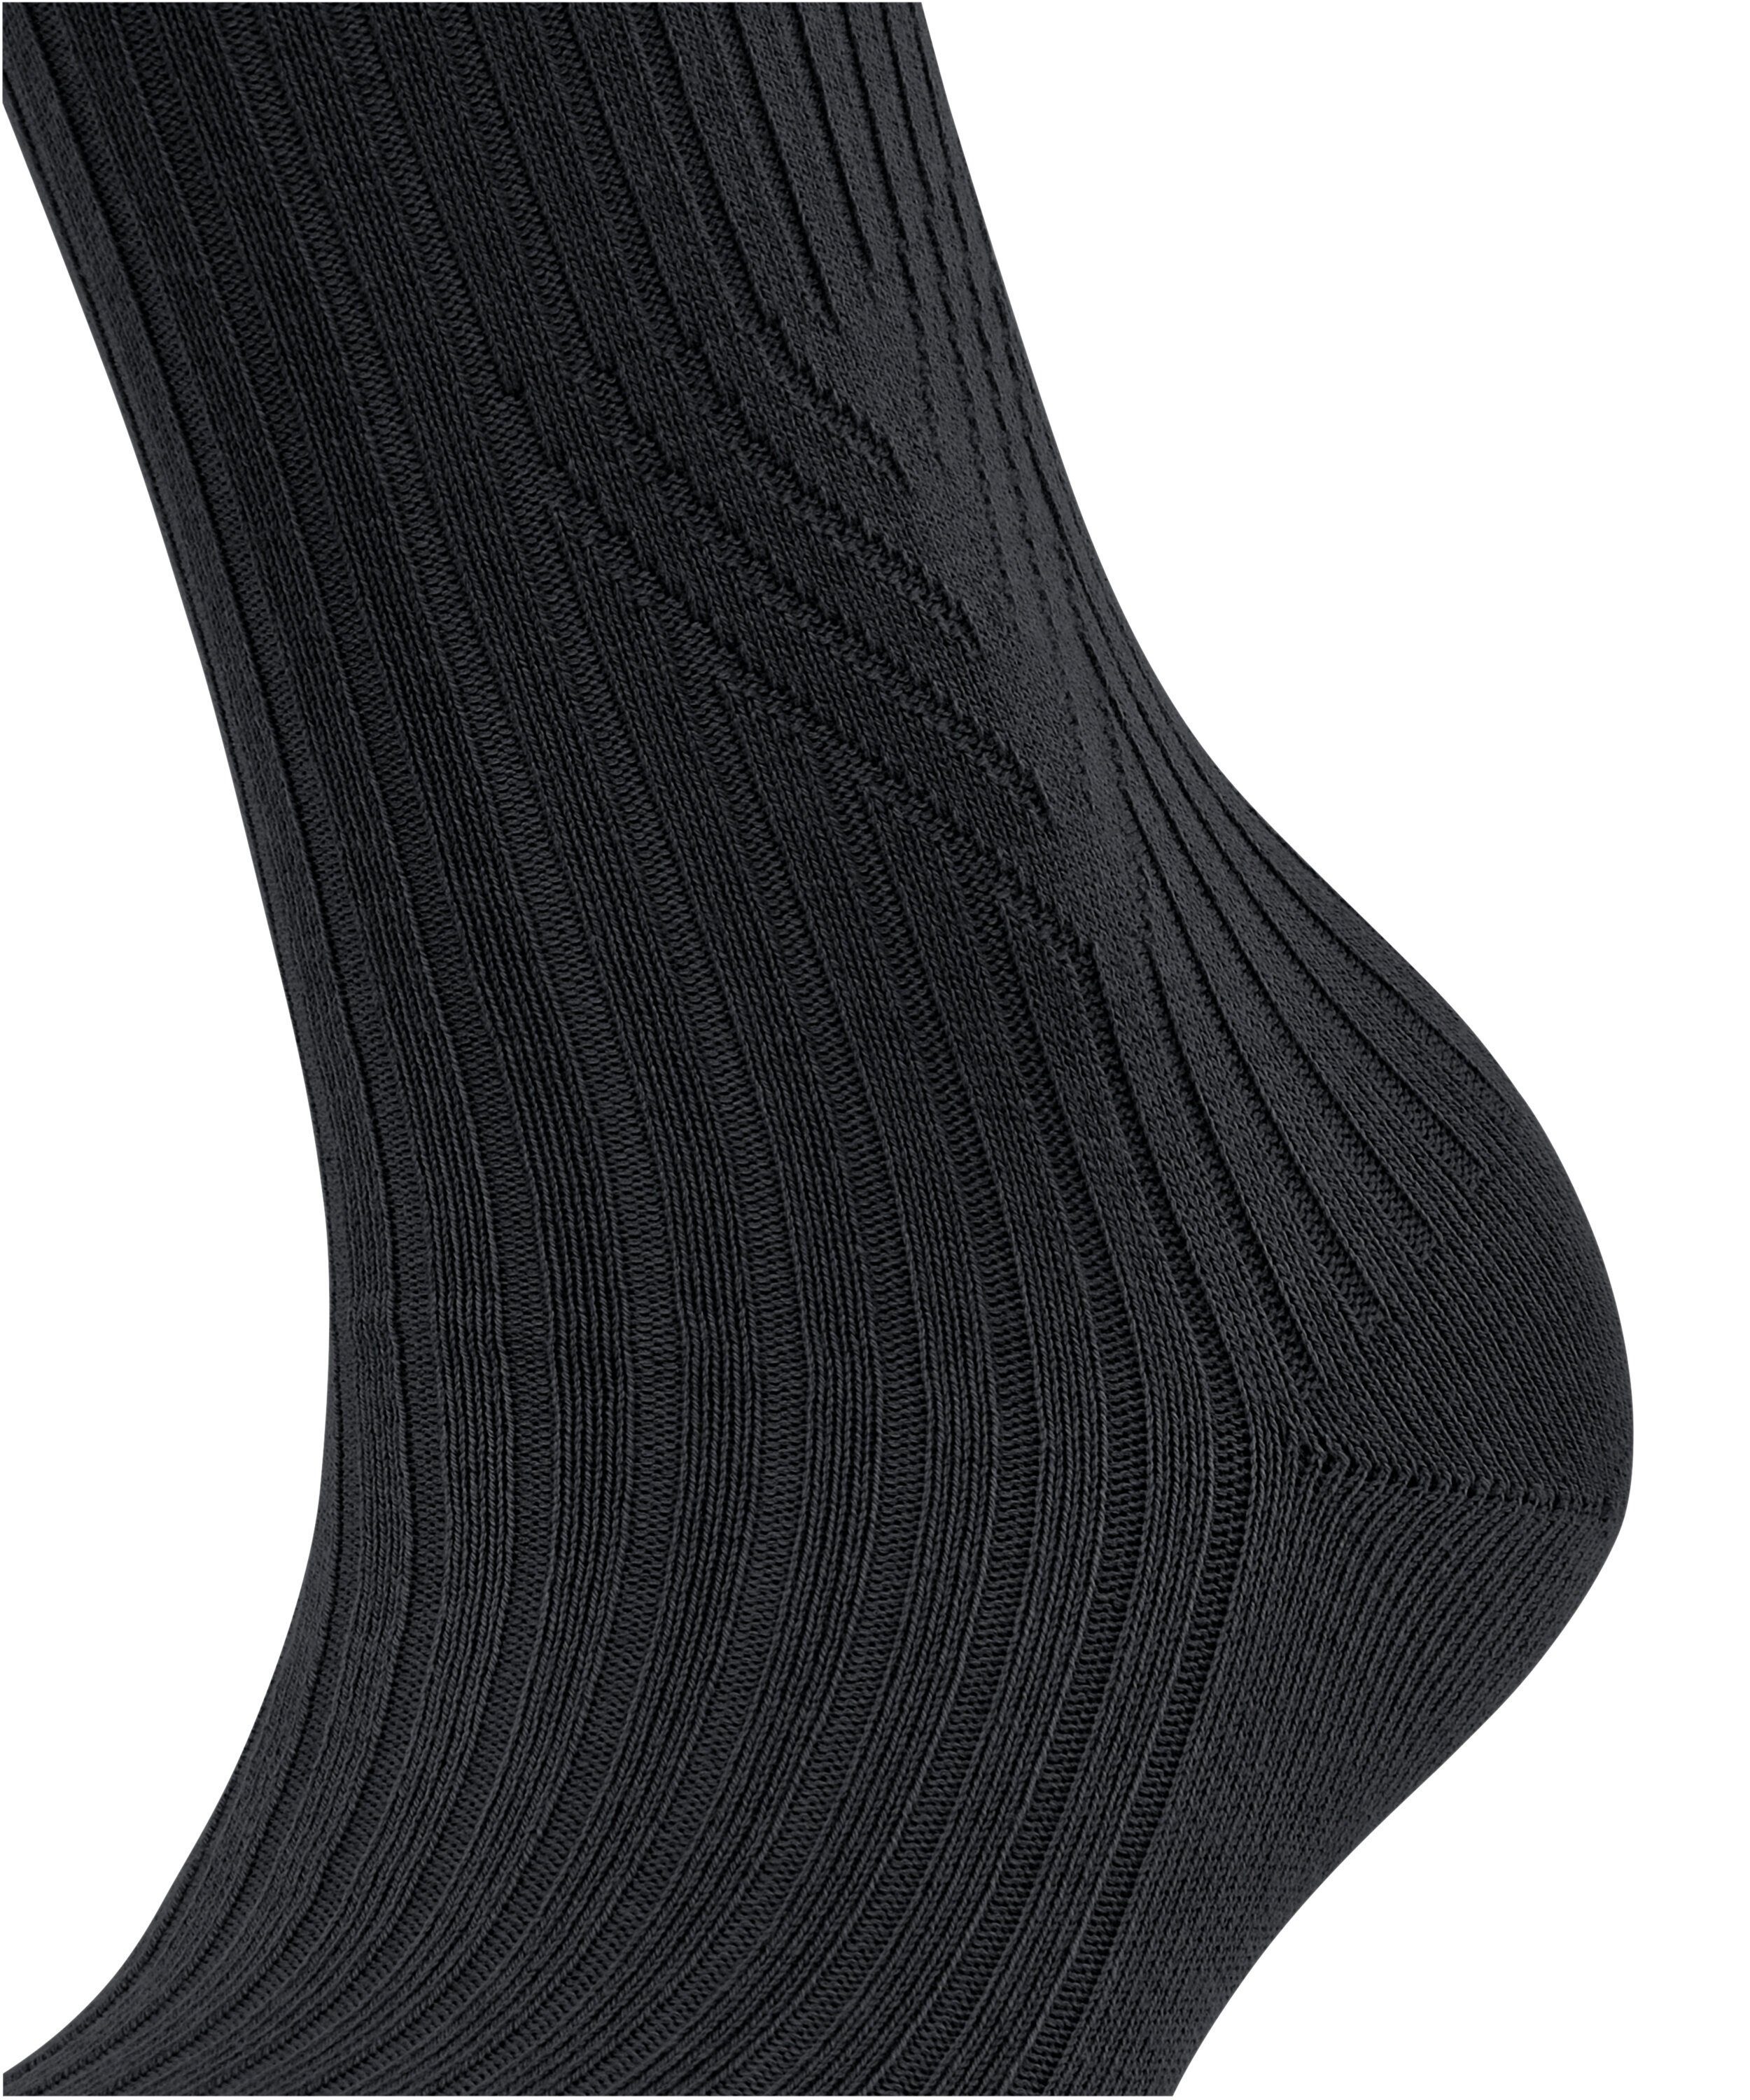 black Socken Cross FALKE Knit (1-Paar) (3000)